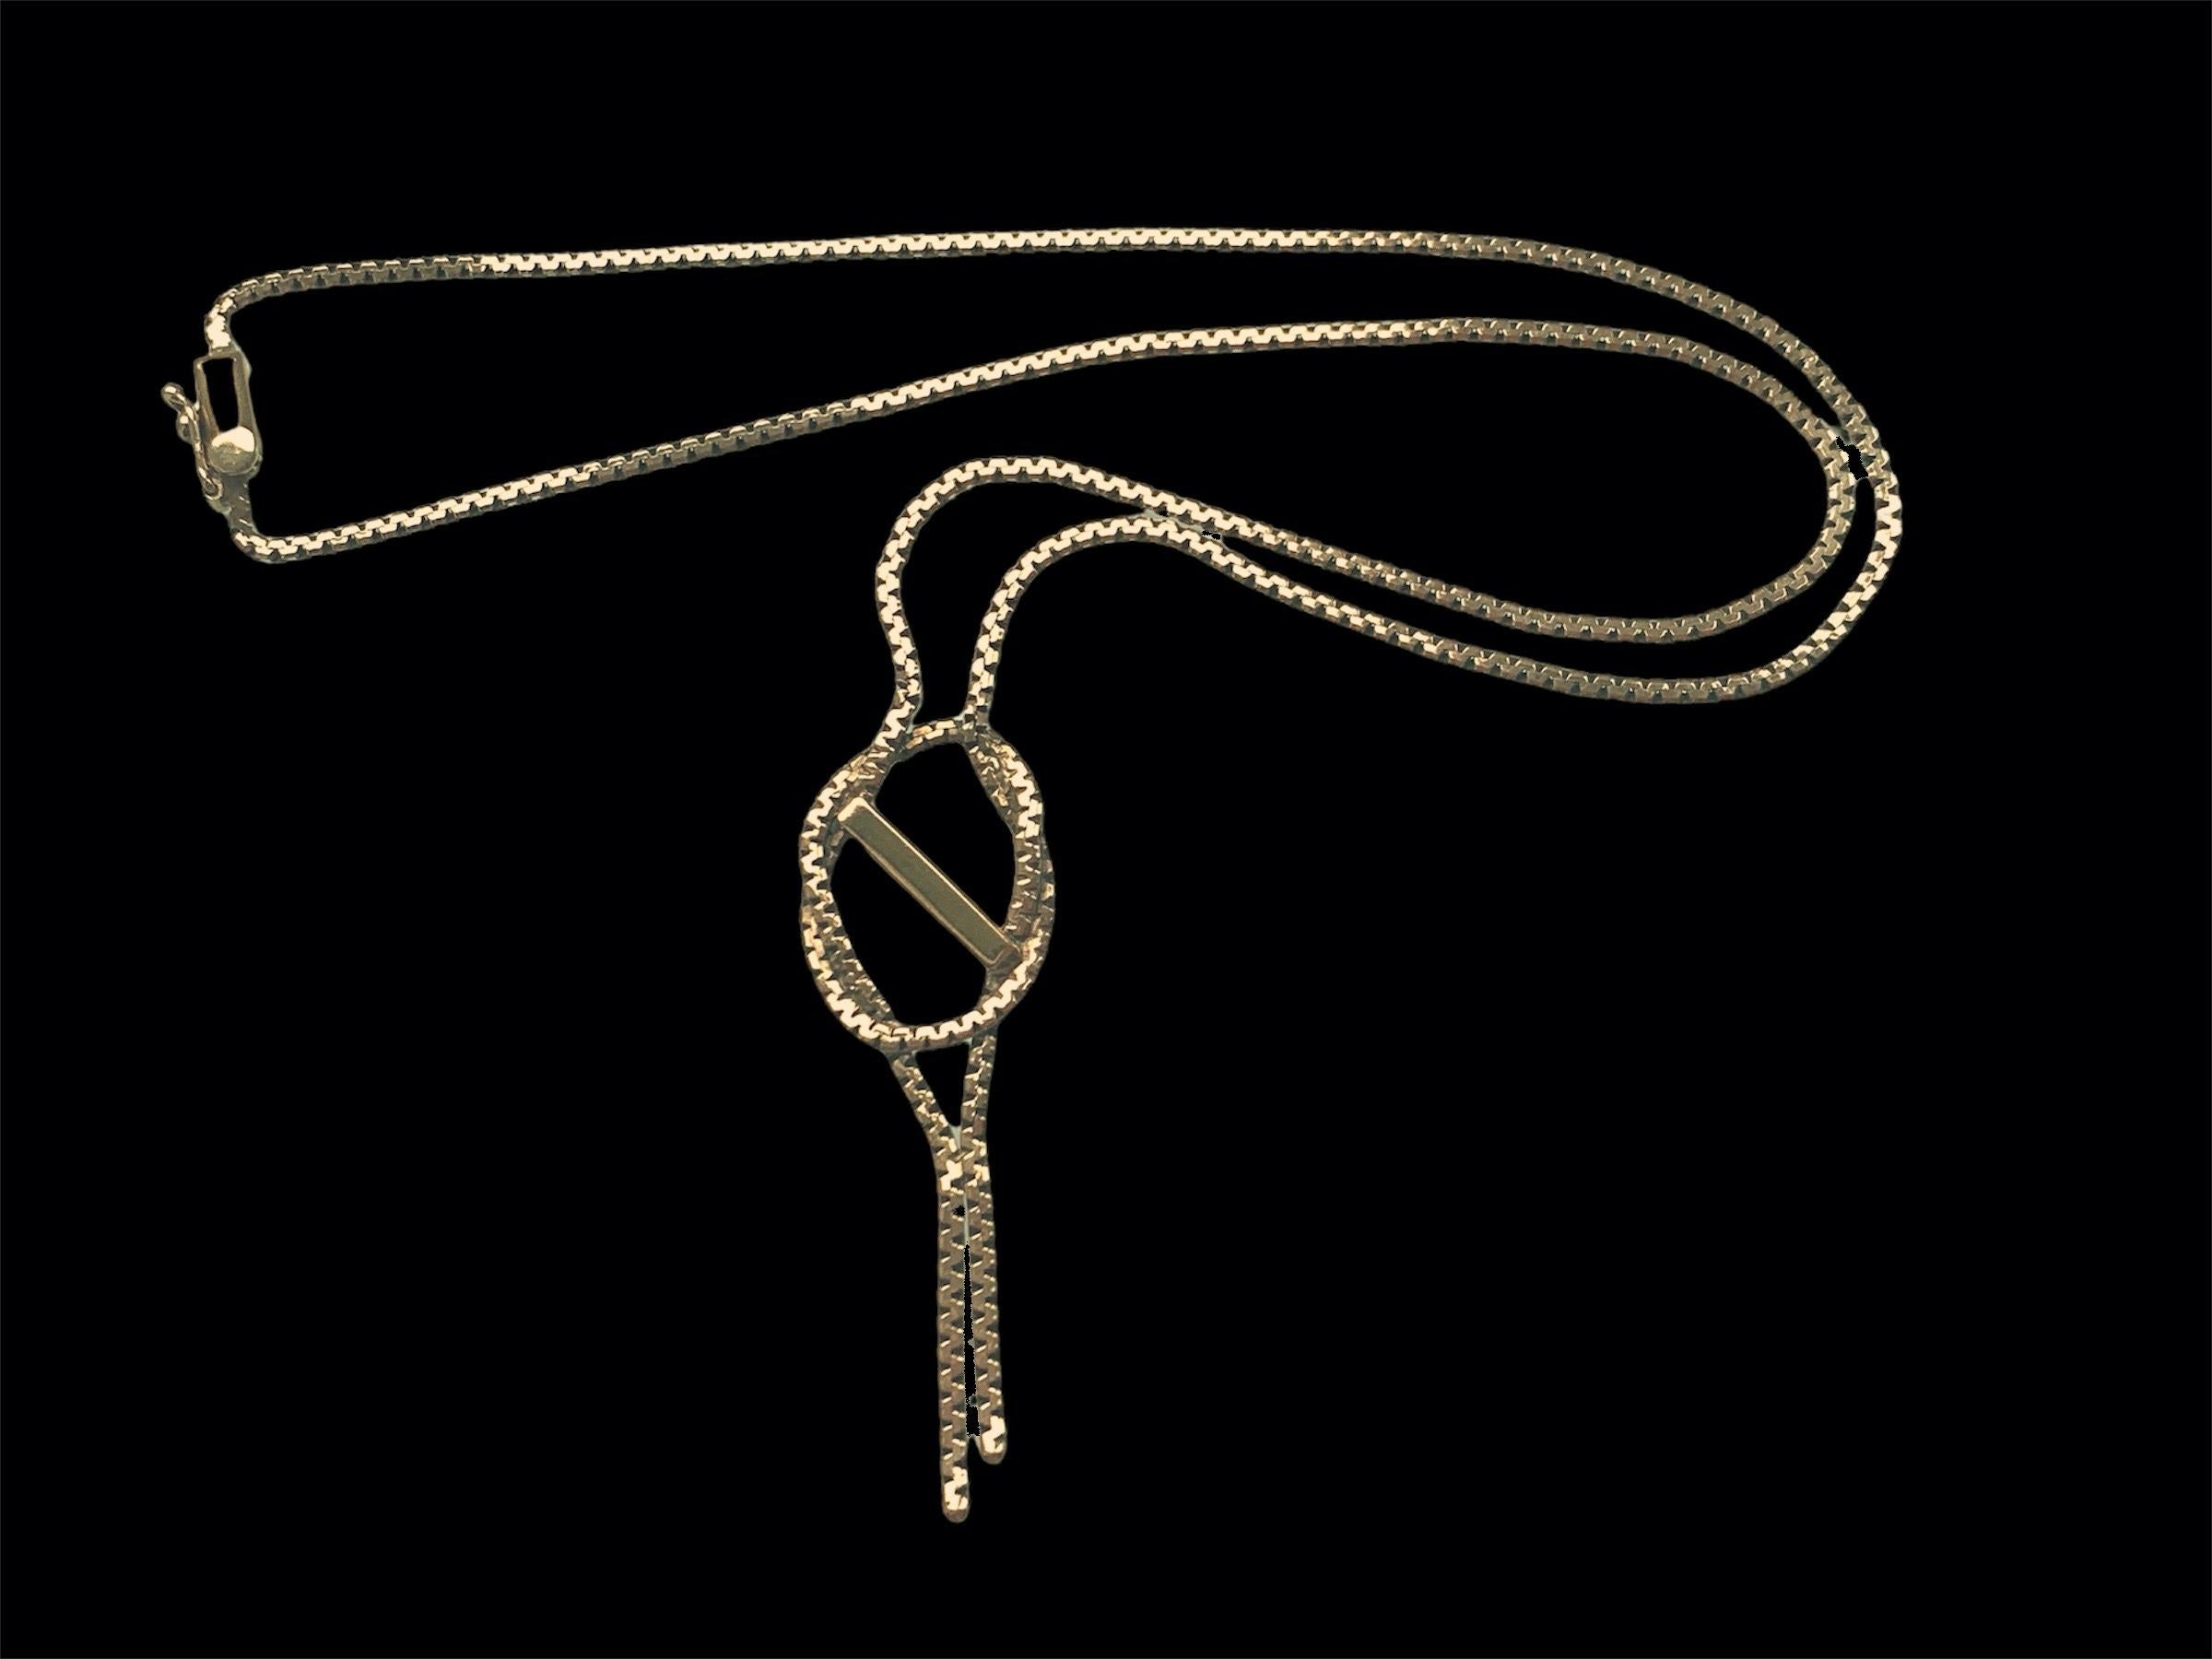 or 9ct 375 - Rare collier vintage
Magnifique collier vintage en très bon état
Entièrement poinçonné en 1978 - Importation de Londres
Longueur de la chaîne 17 pouces x 2mm d'épaisseur
Le fermoir est en parfait état de marche.